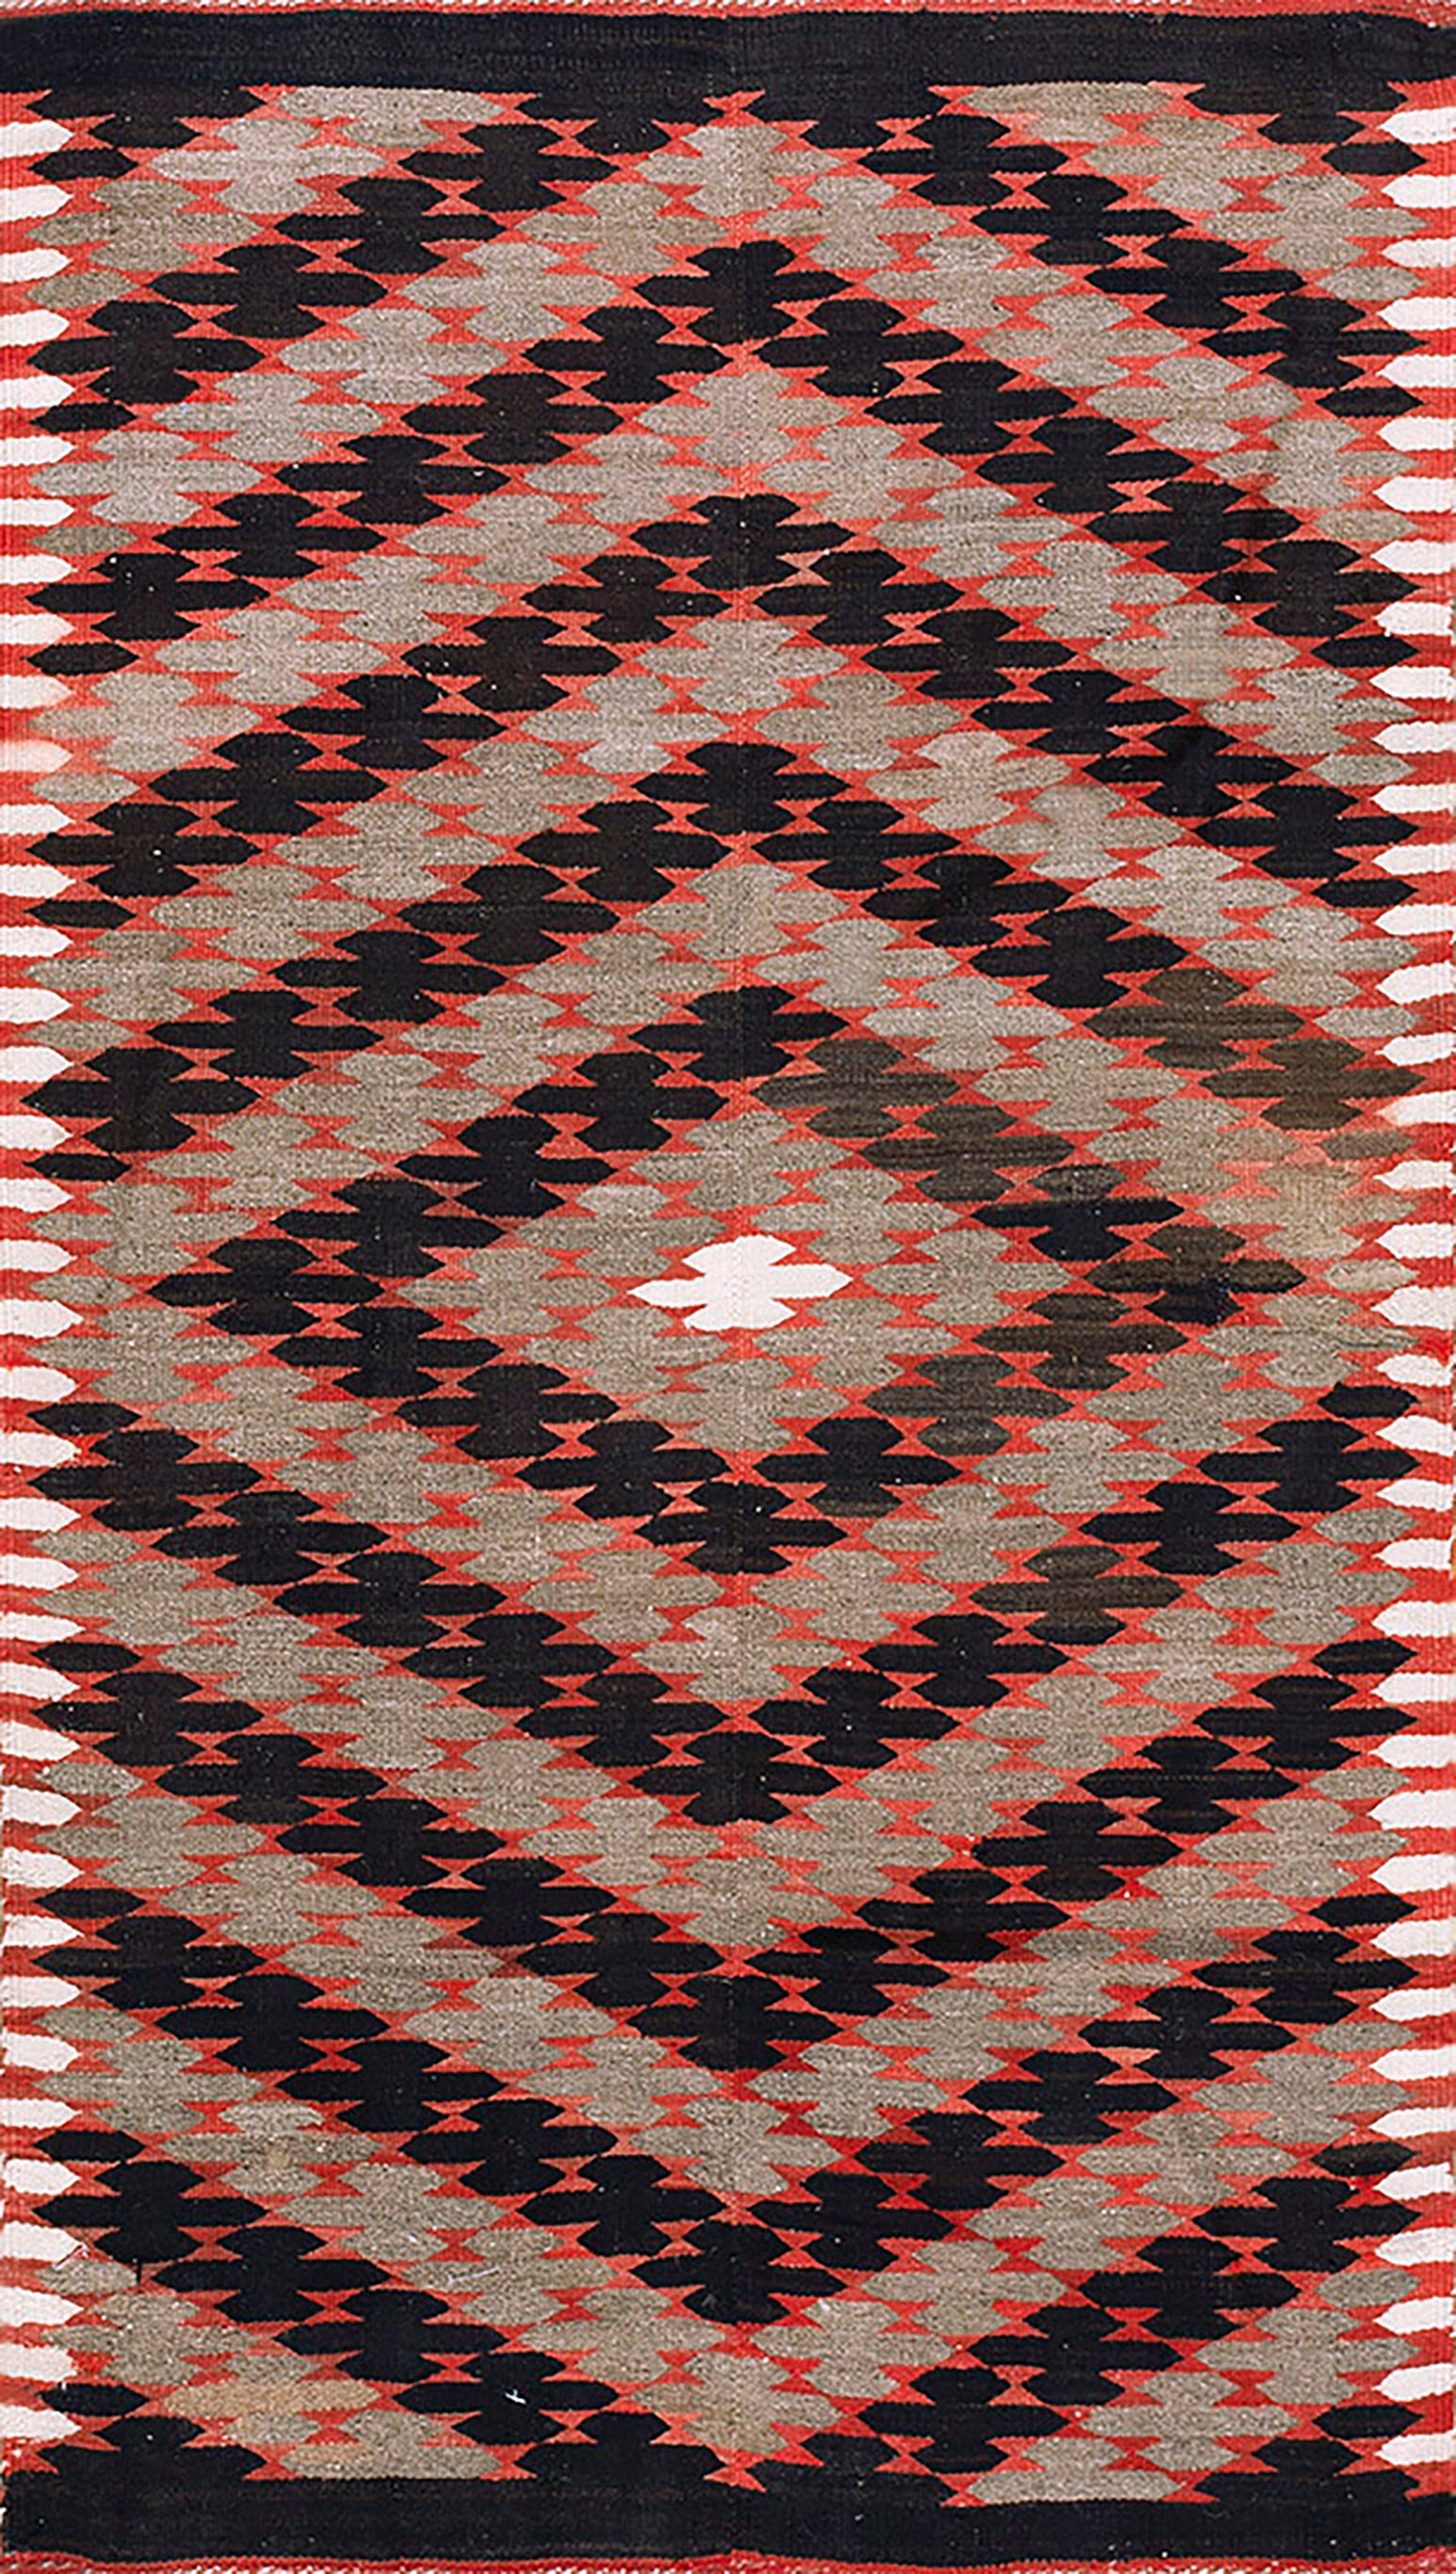 Navajo Rio Grande-Teppich des frühen 20. Jahrhunderts ( 4'6" x 7'8" - 137 x 234)